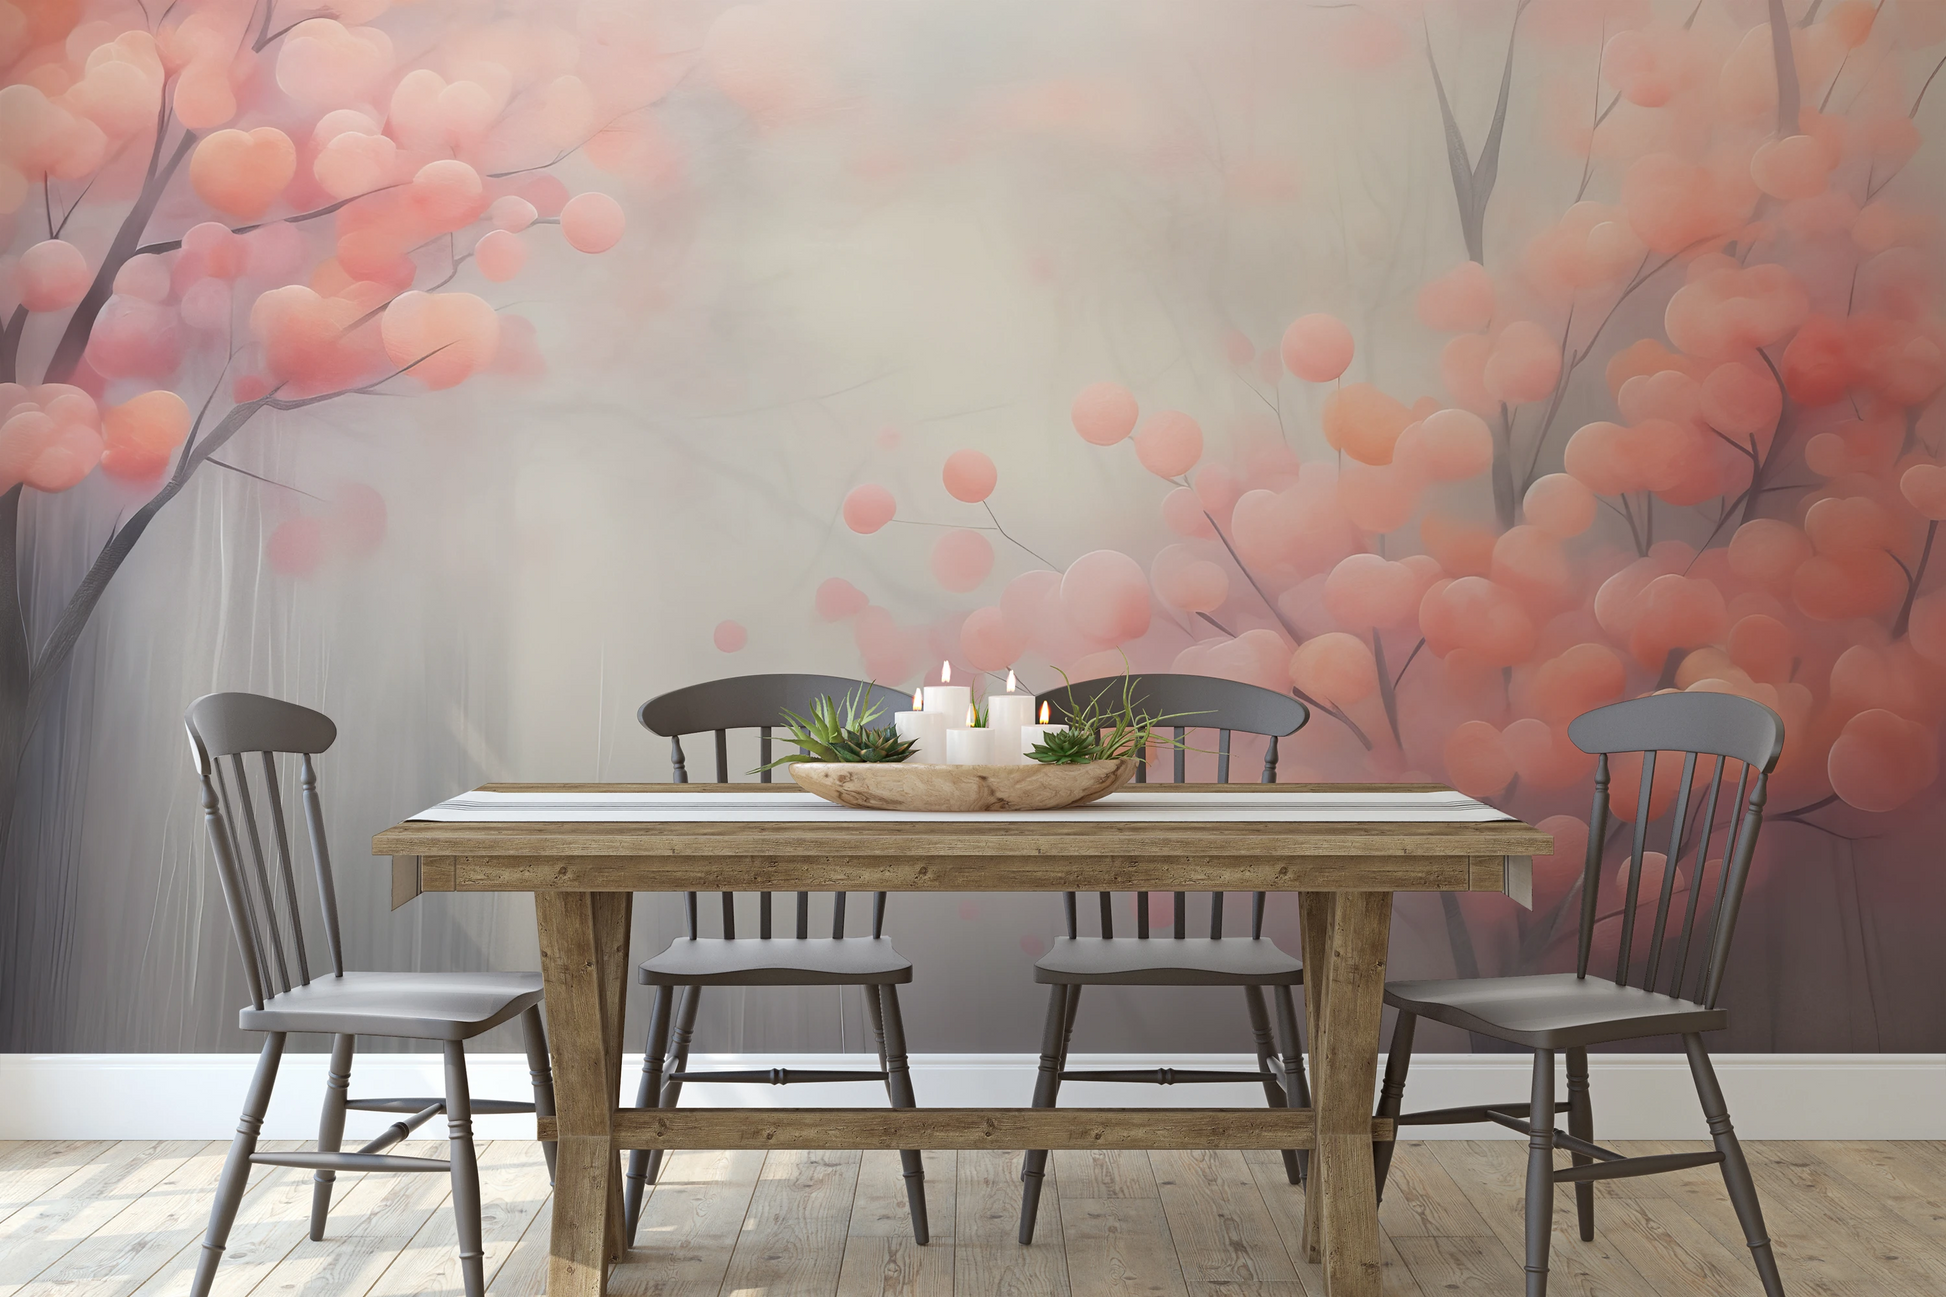 Wzór fototapety malowanej o nazwie Autumn Berries pokazanej w aranżacji wnętrza.